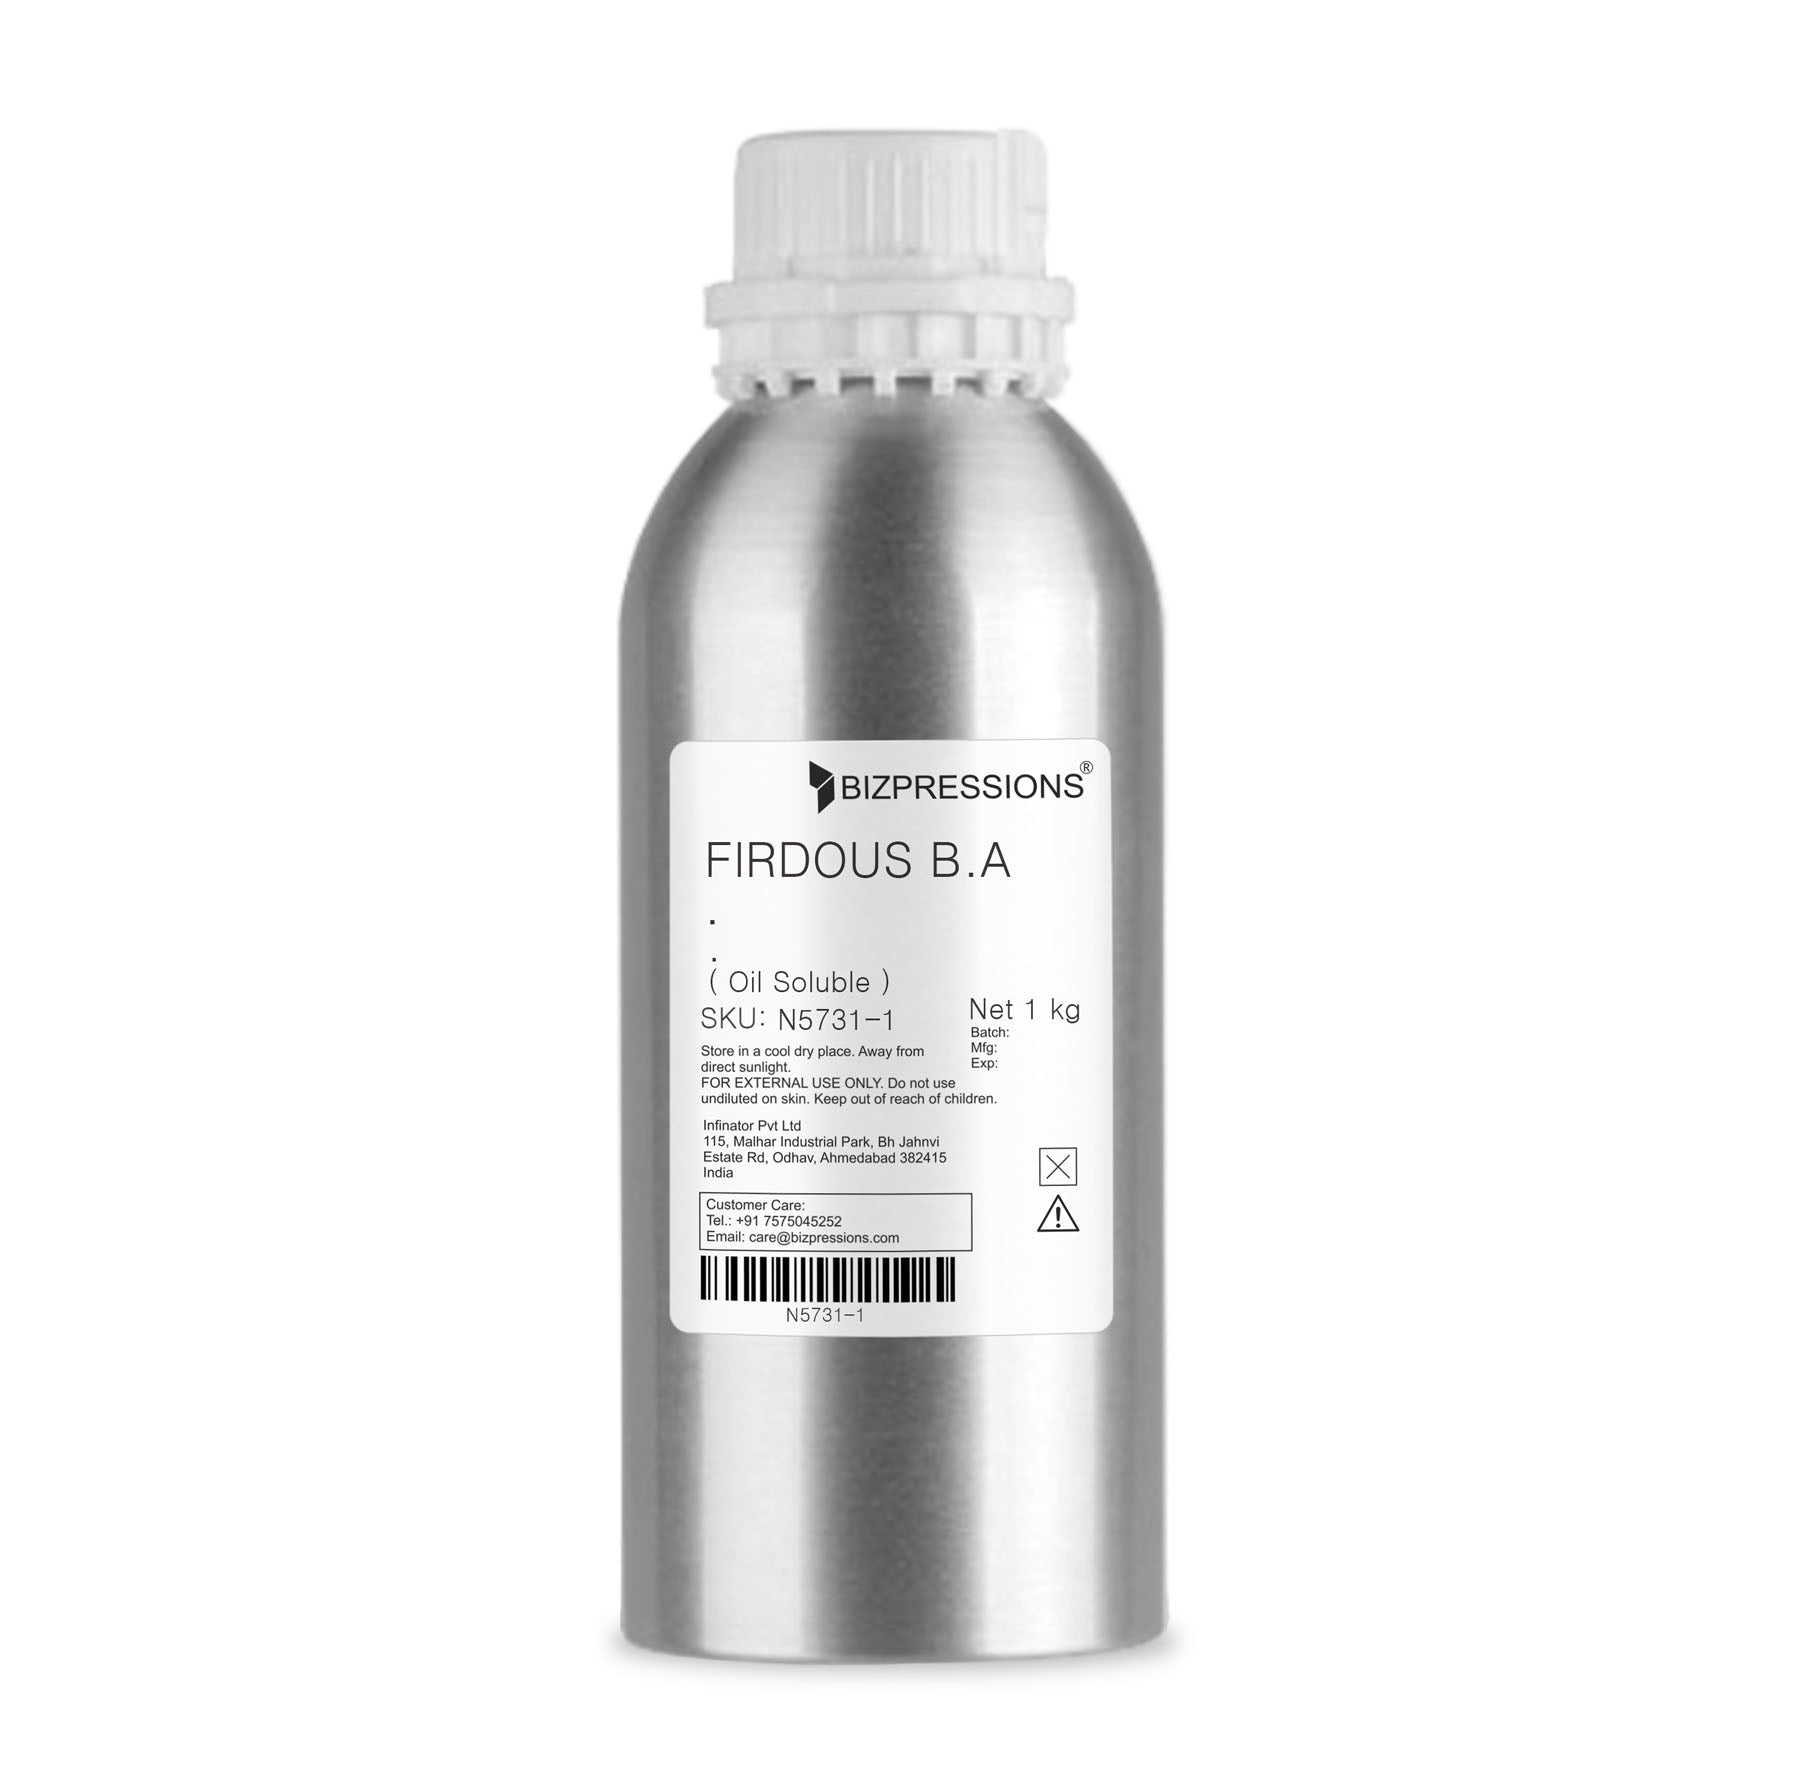 FIRDOUS B.A - Fragrance ( Oil Soluble ) - 1 kg